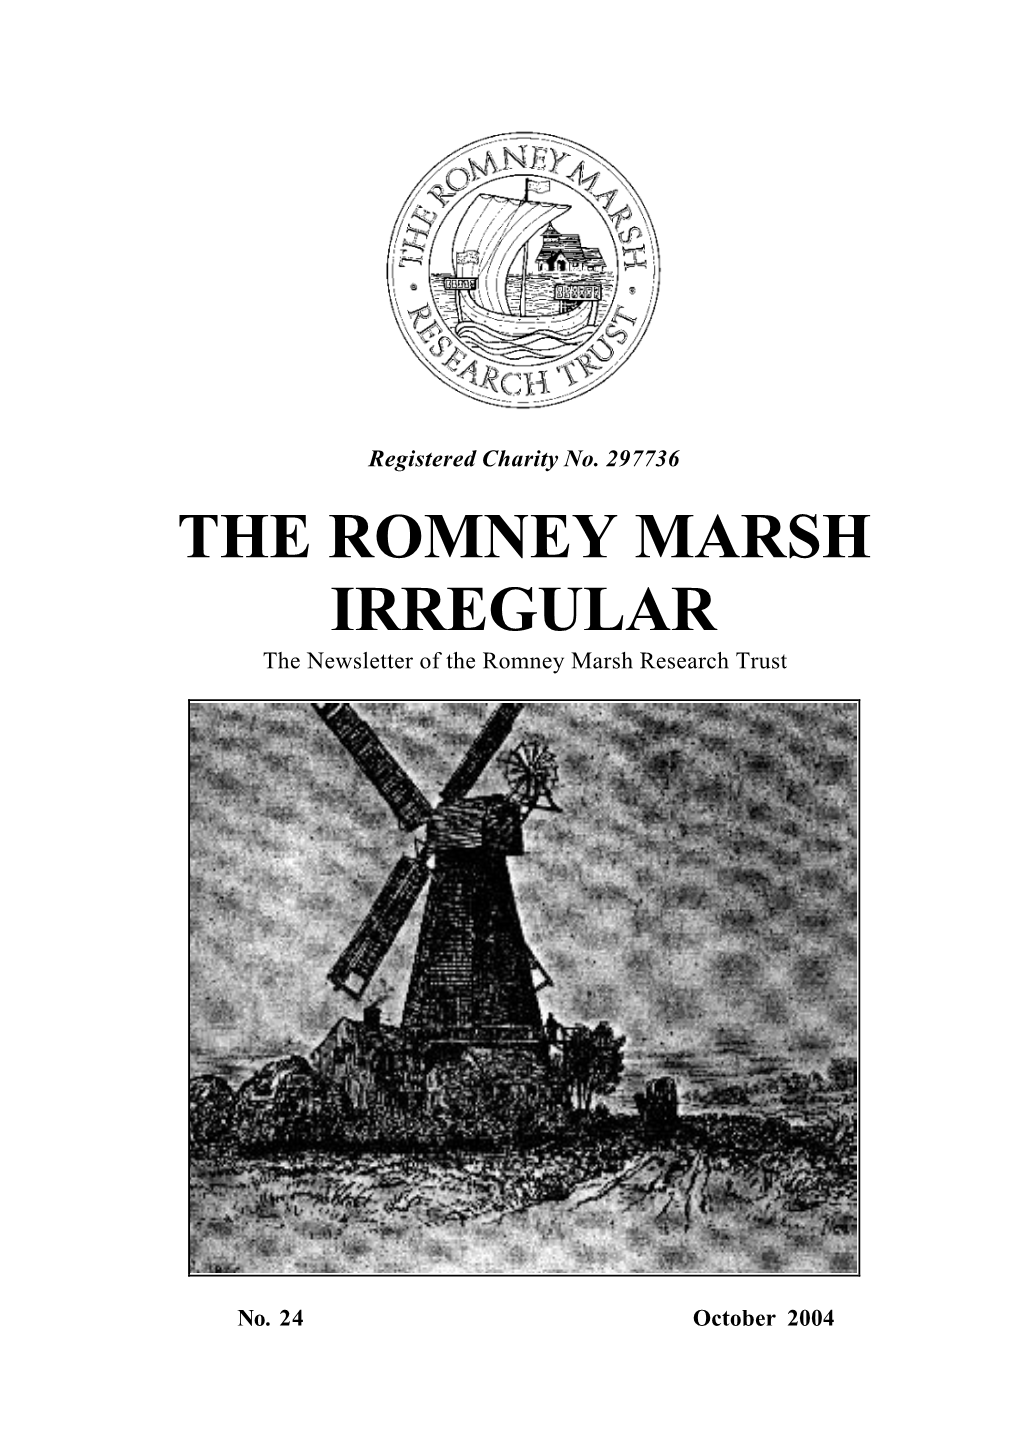 THE ROMNEY MARSH IRREGULAR the Newsletter of the Romney Marsh Research Trust